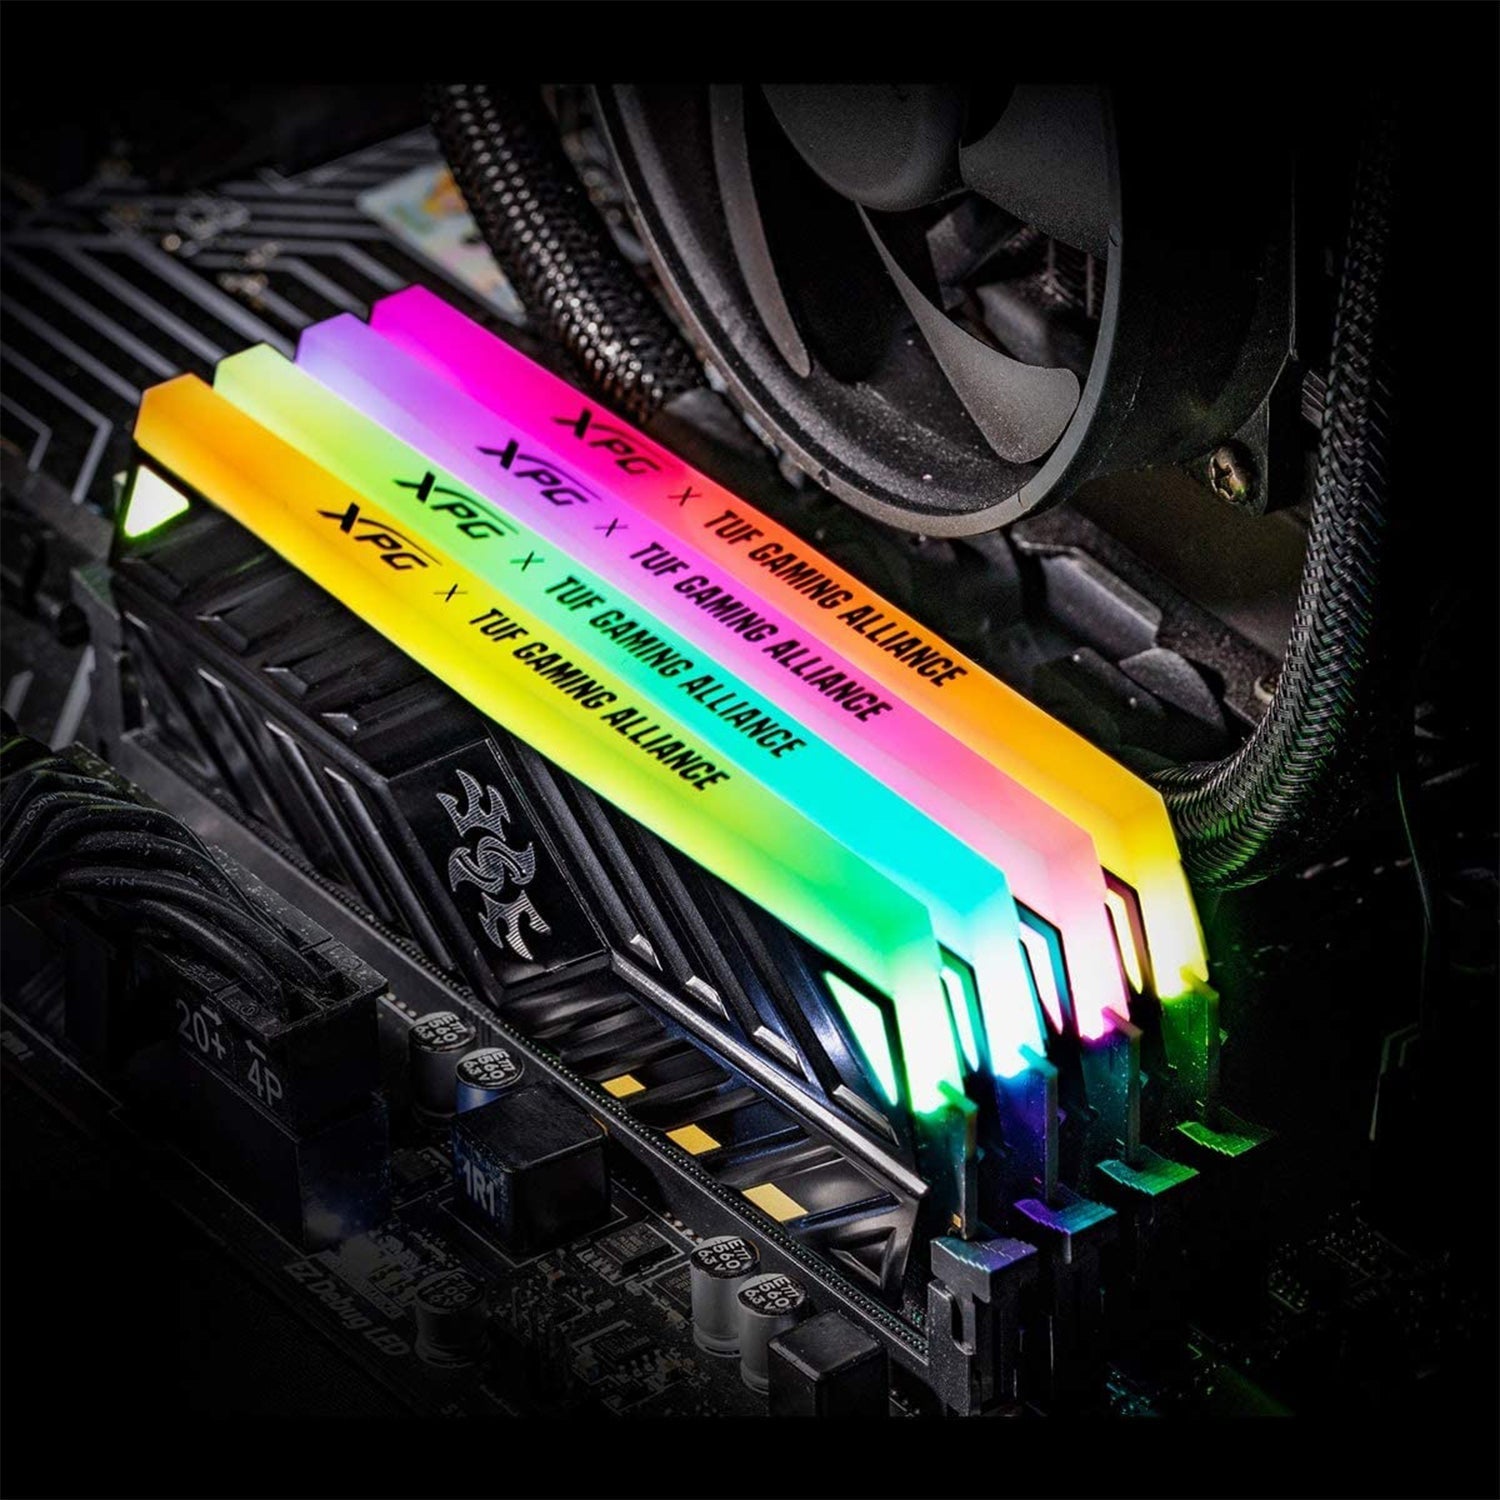 XPG Spectrix D41 8gb RAM DDR4